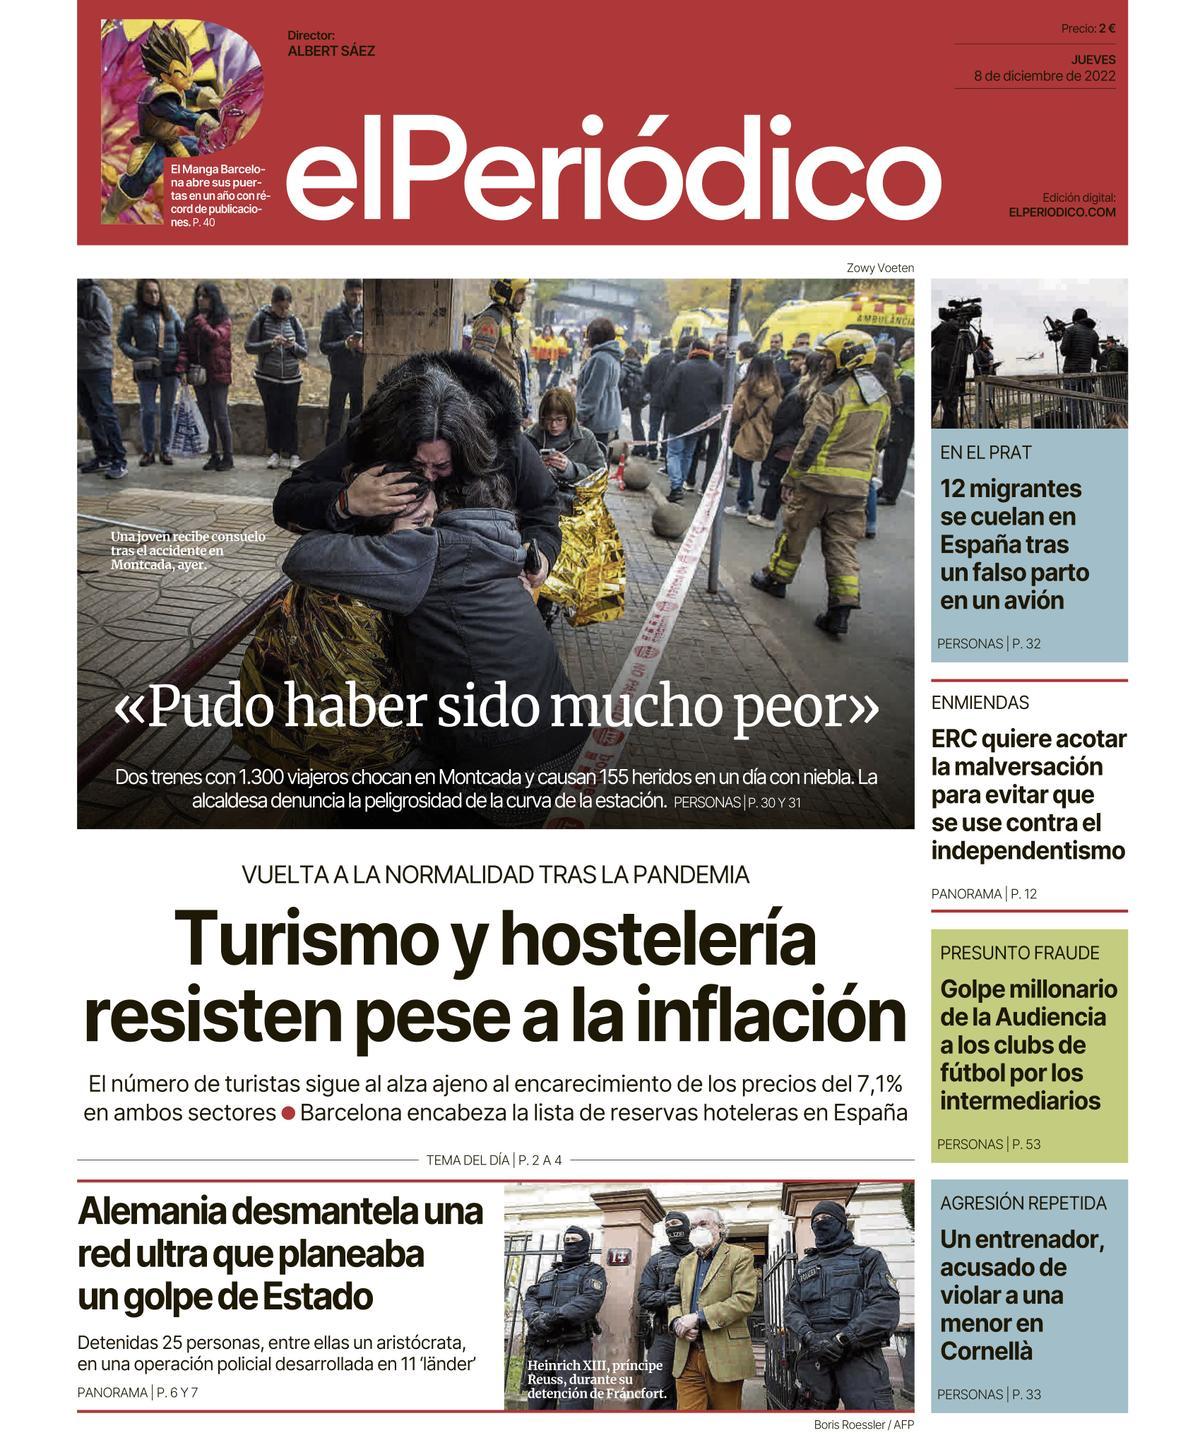 La portada de EL PERIÓDICO del 8 de diciembre de 2022